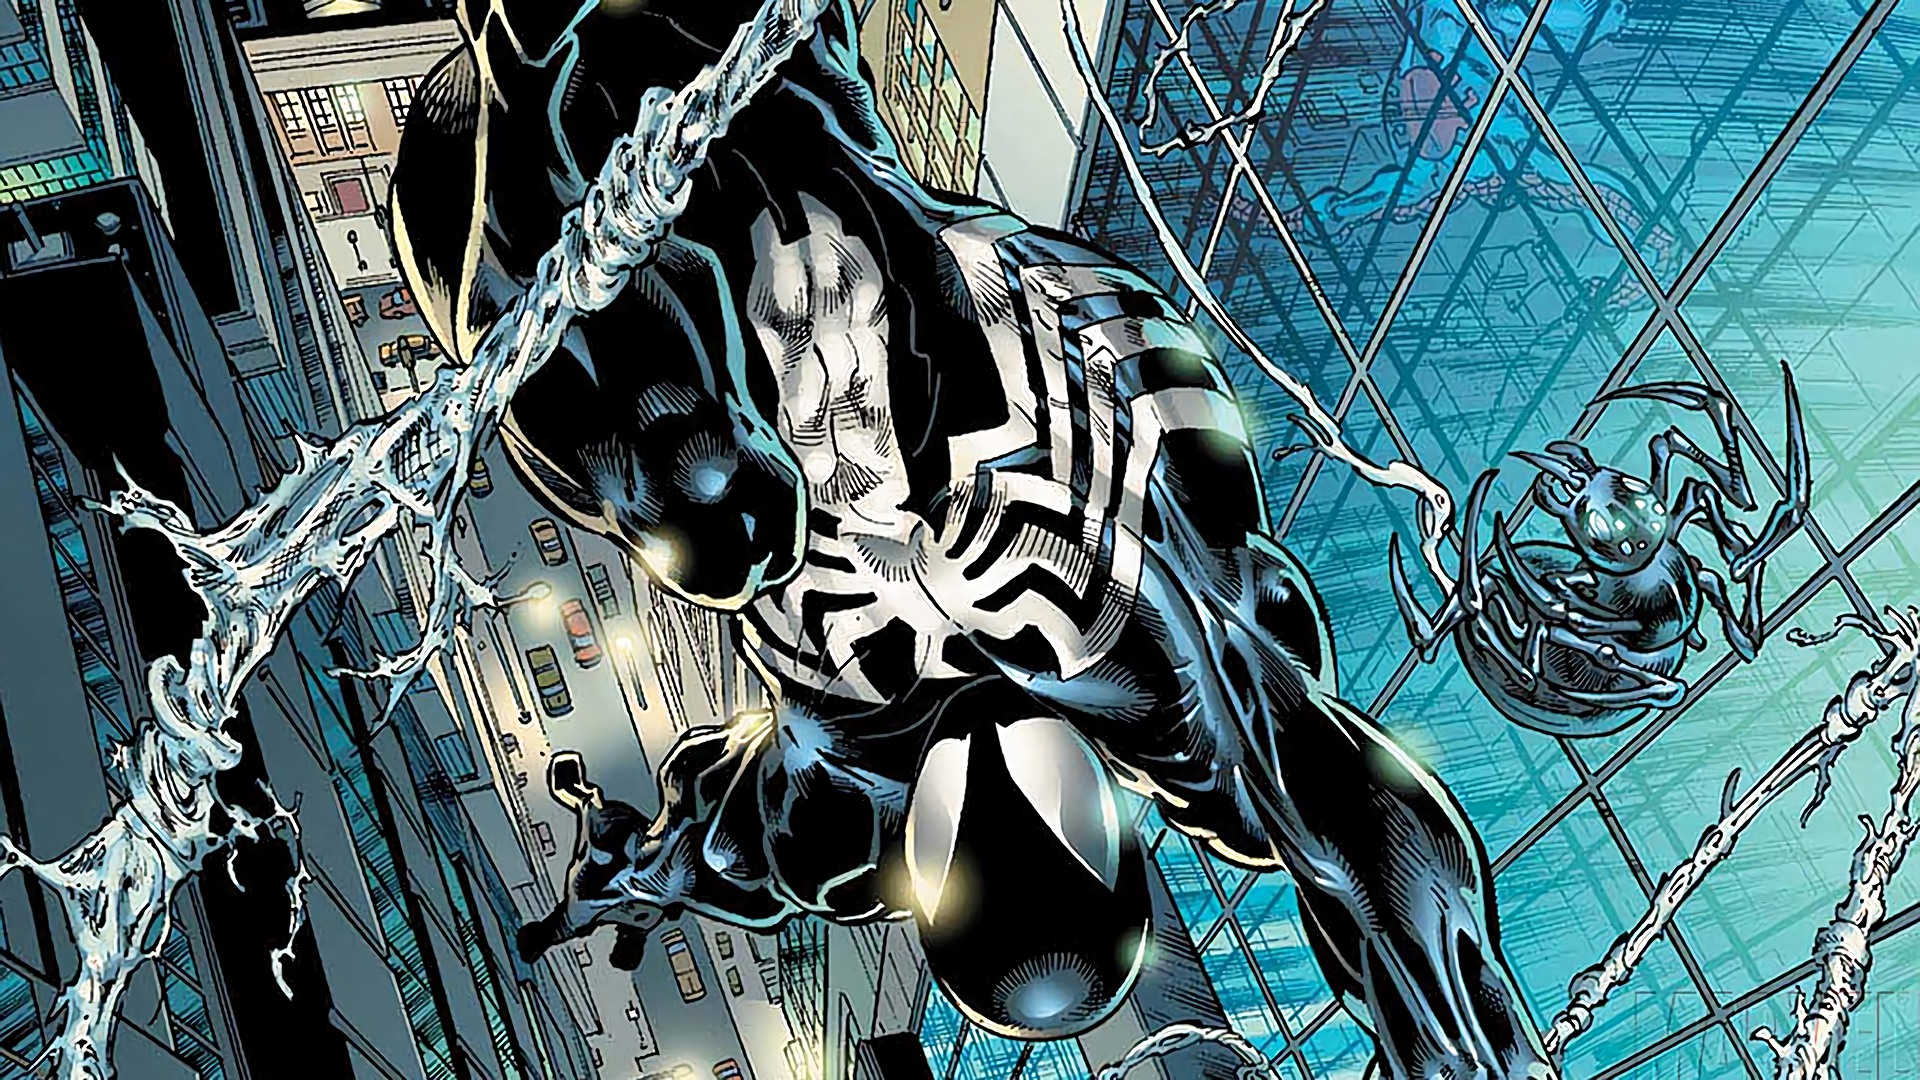 fond d'écran noir spiderman,personnage fictif,oeuvre de cg,fiction,illustration,conception graphique